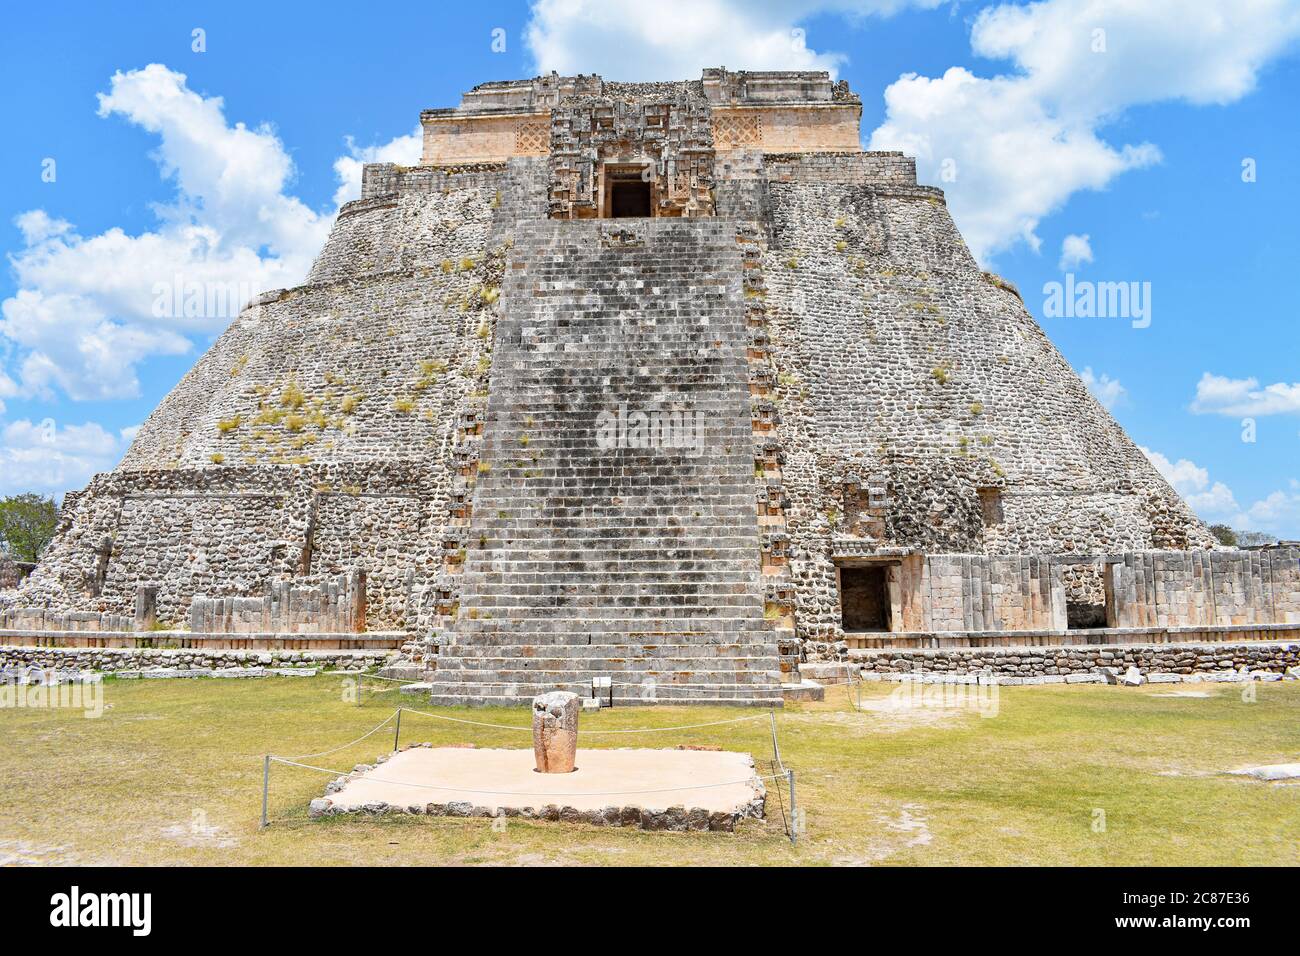 Die Pyramide des Magiers an einem hellen sonnigen Tag in der alten Maya-Stadt Uxmal auf der Yucatan Halbinsel, Mexiko. Stockfoto